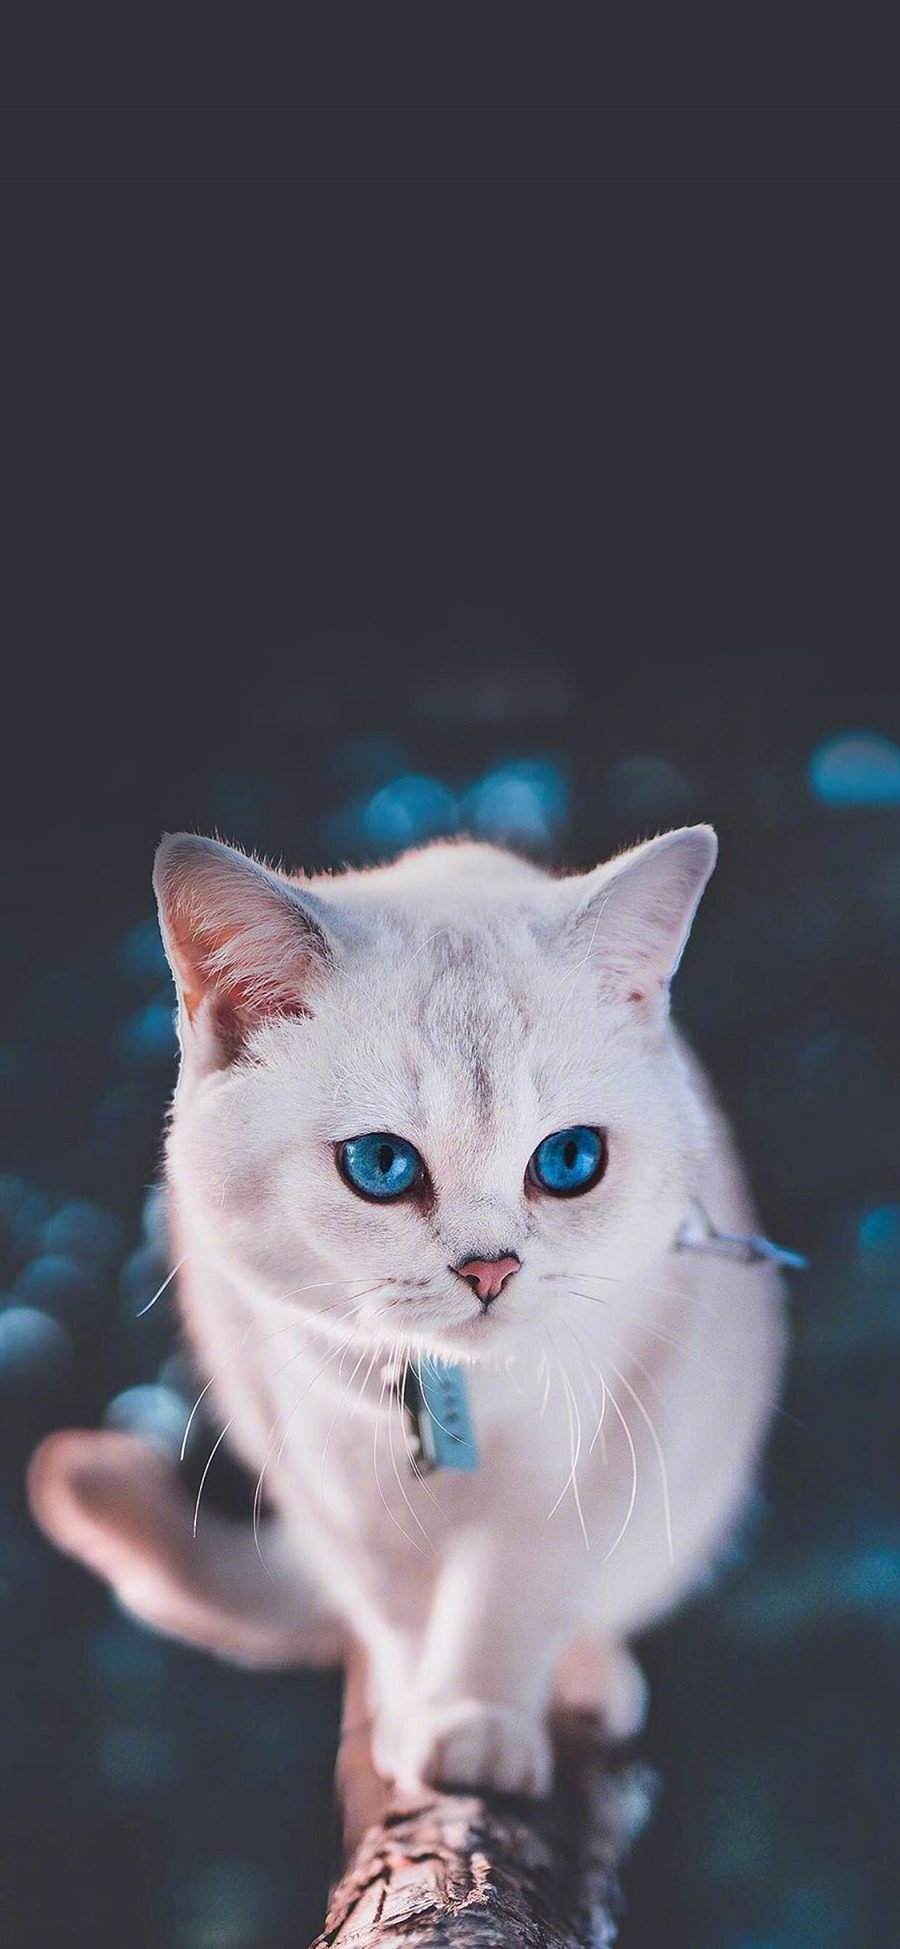 [2436×1125]猫咪 宠物 项圈 瞳孔 苹果手机壁纸图片